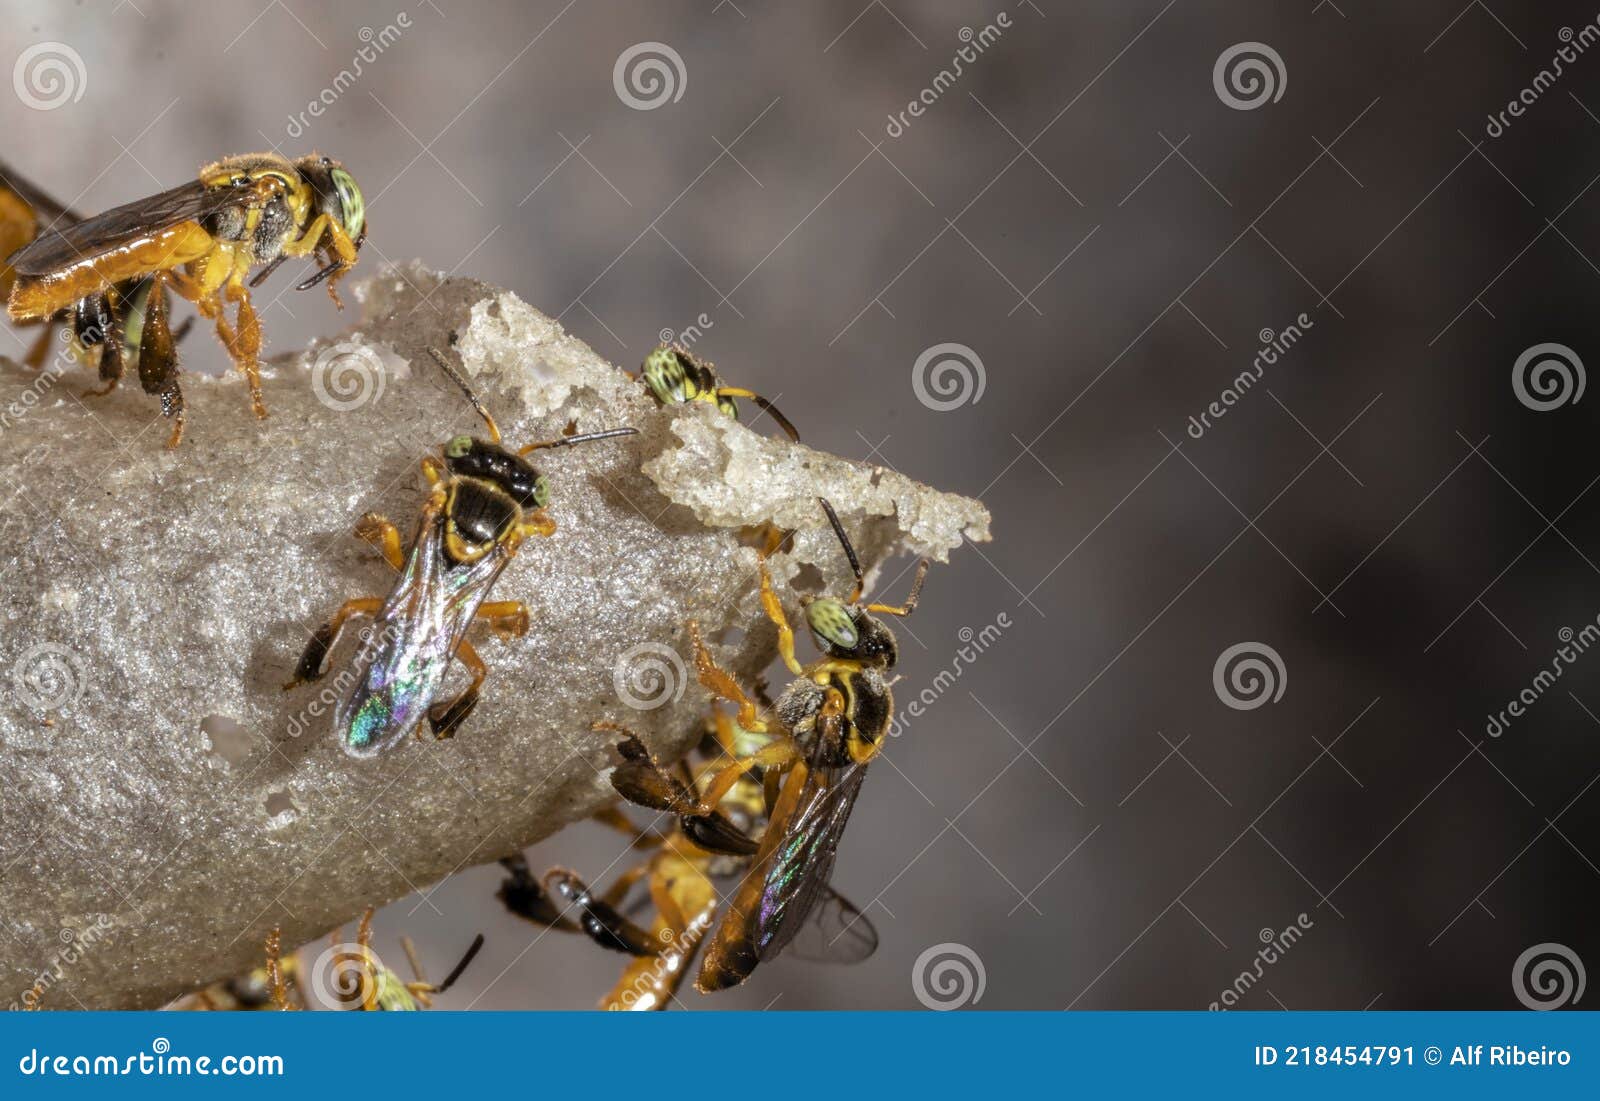 蜜蜂是如何消化和排泄的-知花蜂蜜网-,养蜂知识-蜜蜂|消化|排泄|蜜囊|马氏管|知花蜂蜜-中国蜂蜜行业门户网站-www.zhfengmi.com-文章